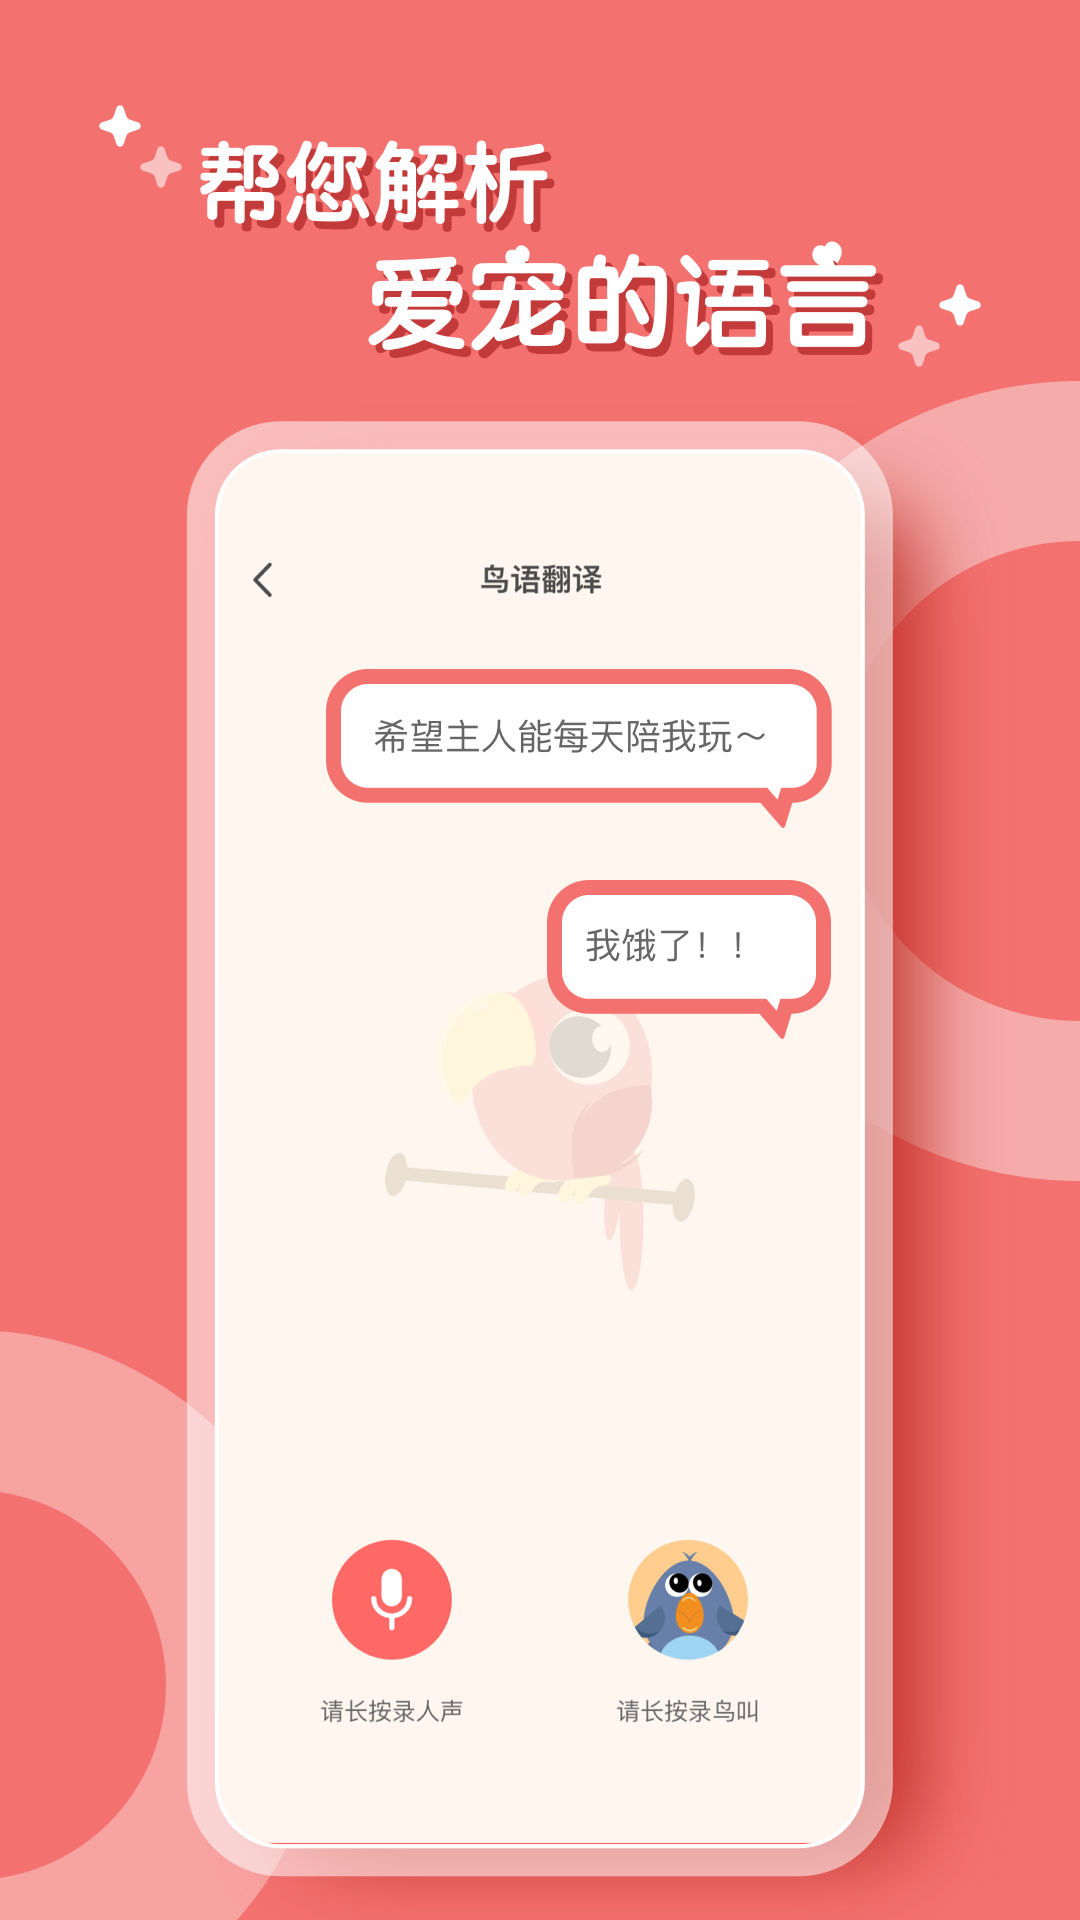 鹦鹉翻译器中文版v2.1.1